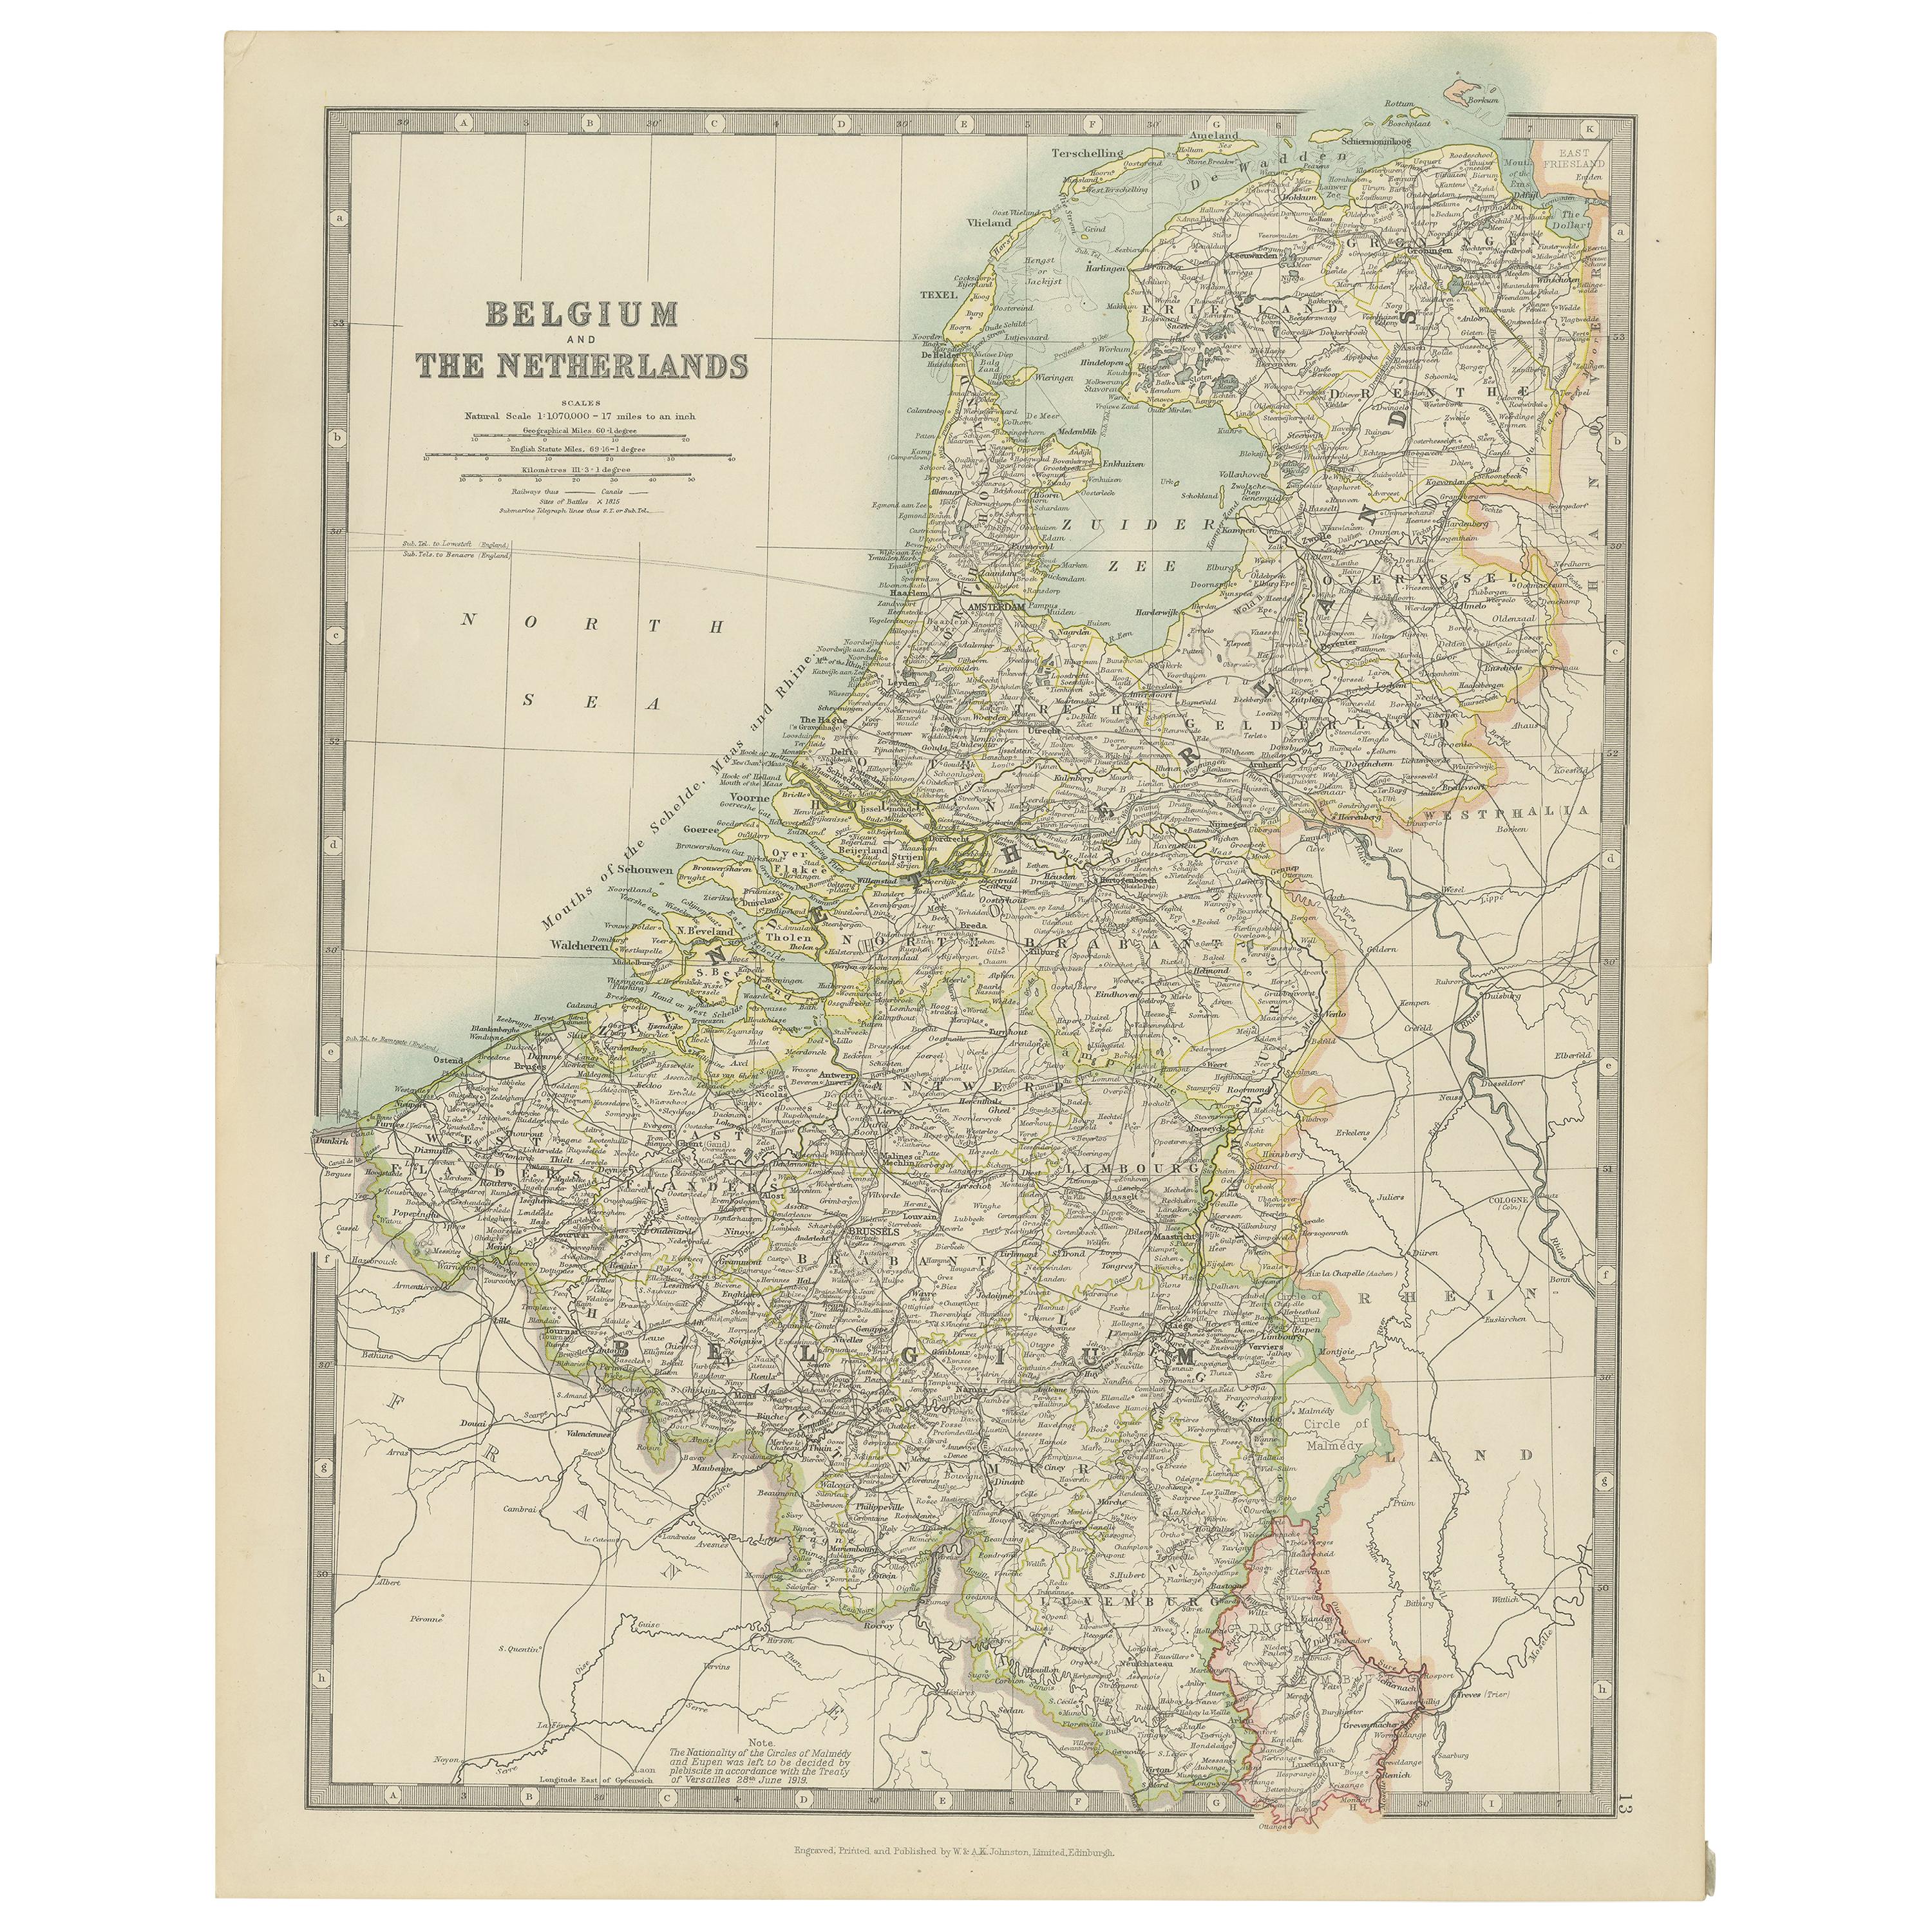 Carte ancienne de Belgique et des Pays-Bas par Johnston, datant d'environ 1920